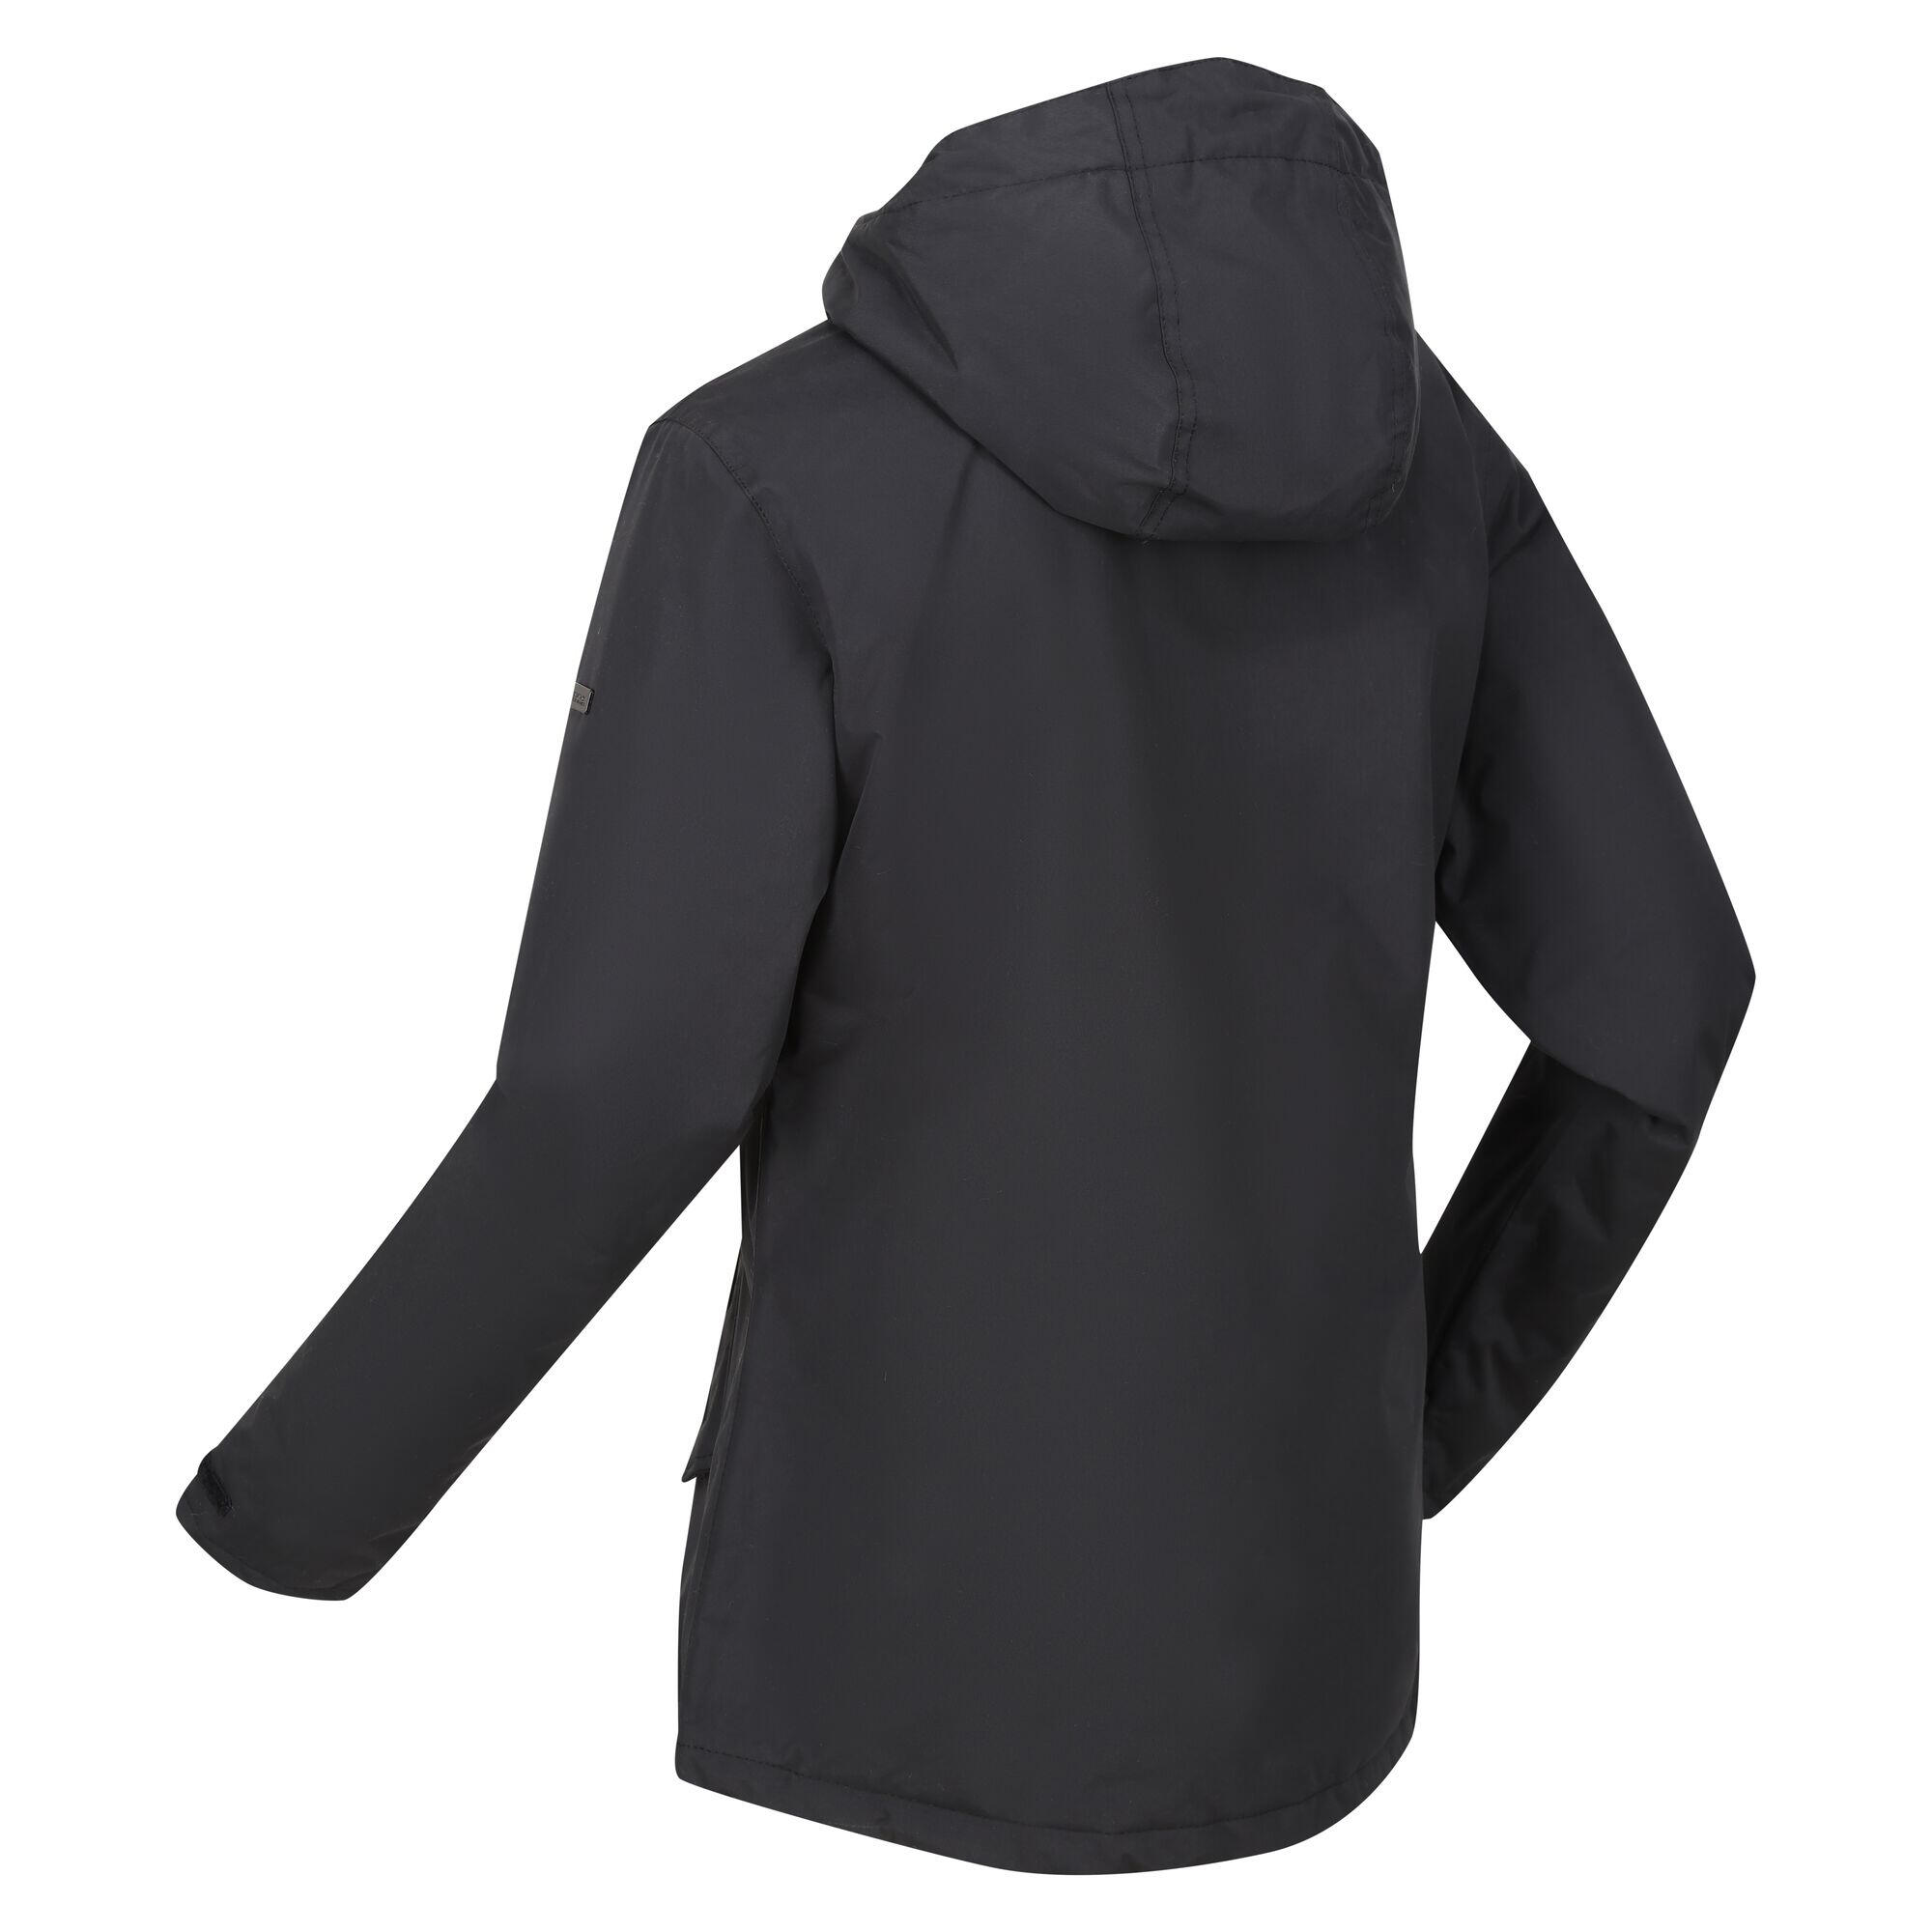 Womens/Ladies Bria Faux Fur Lined Waterproof Jacket (Black) 4/5